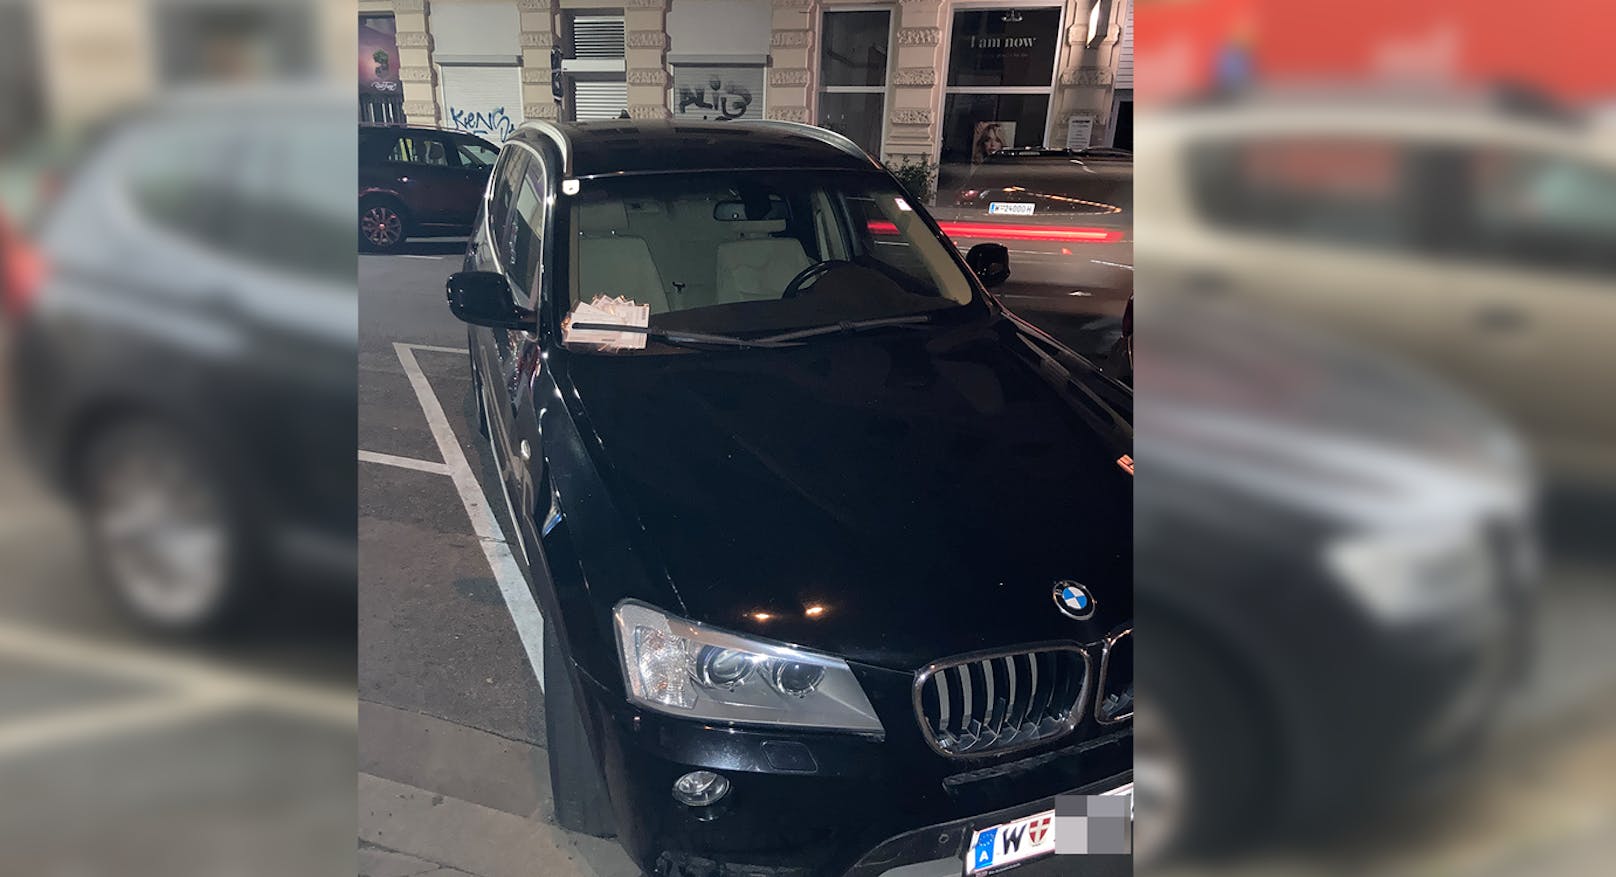 "Sammelt Strafzettel" – SUV sorgt für Aufsehen in Wien